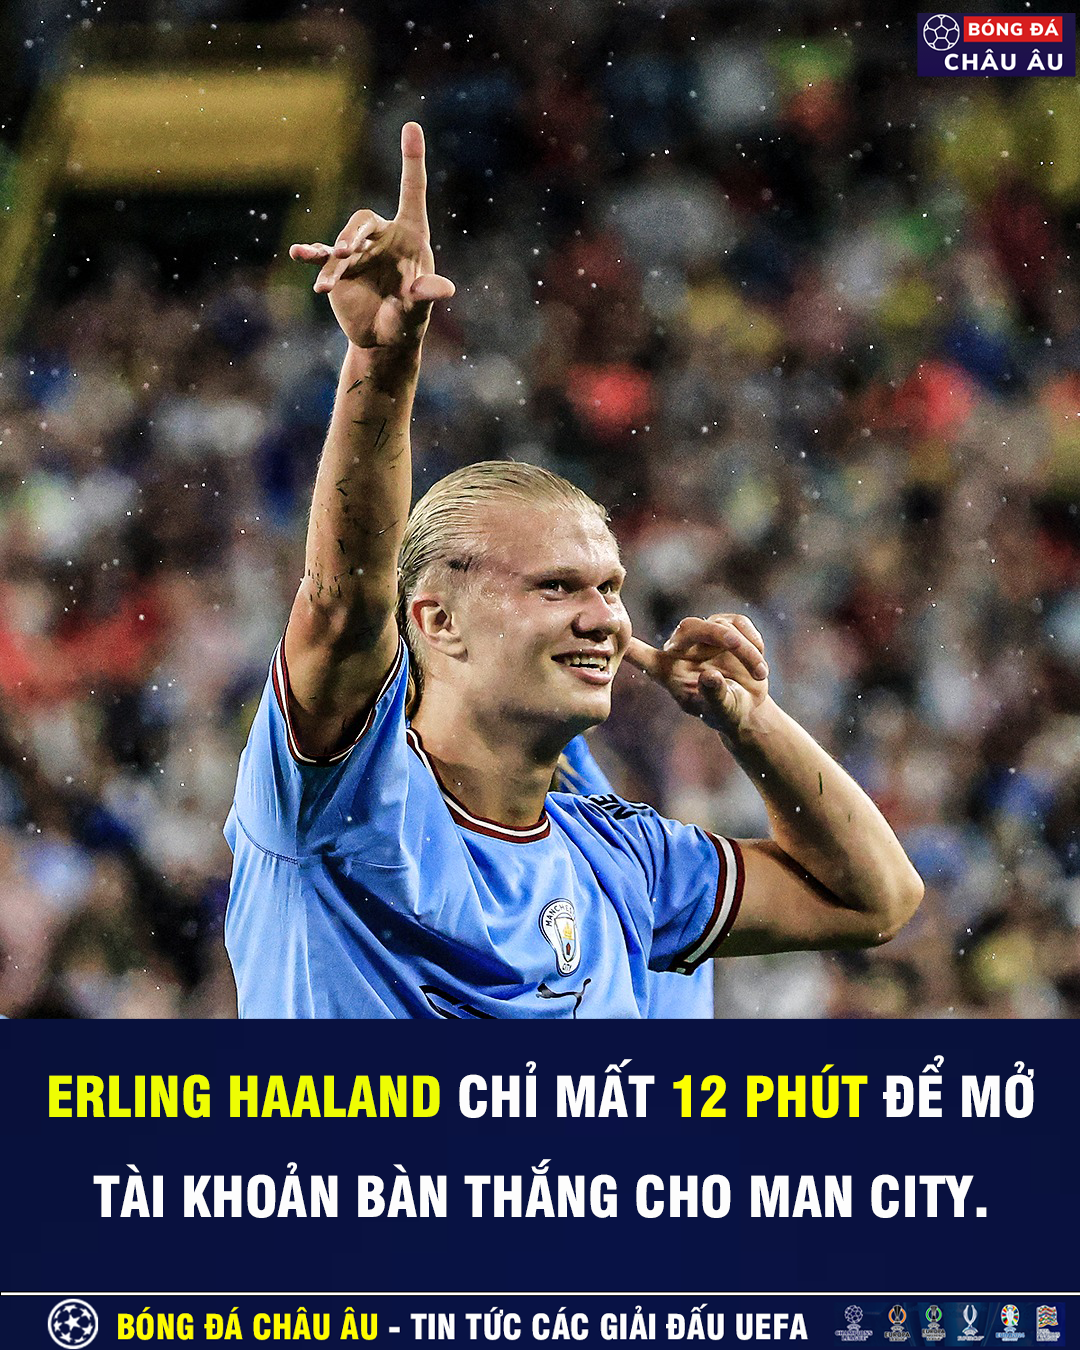 Erling Haaland ghi bàn thắng đầu tiên trong màu áo Man City